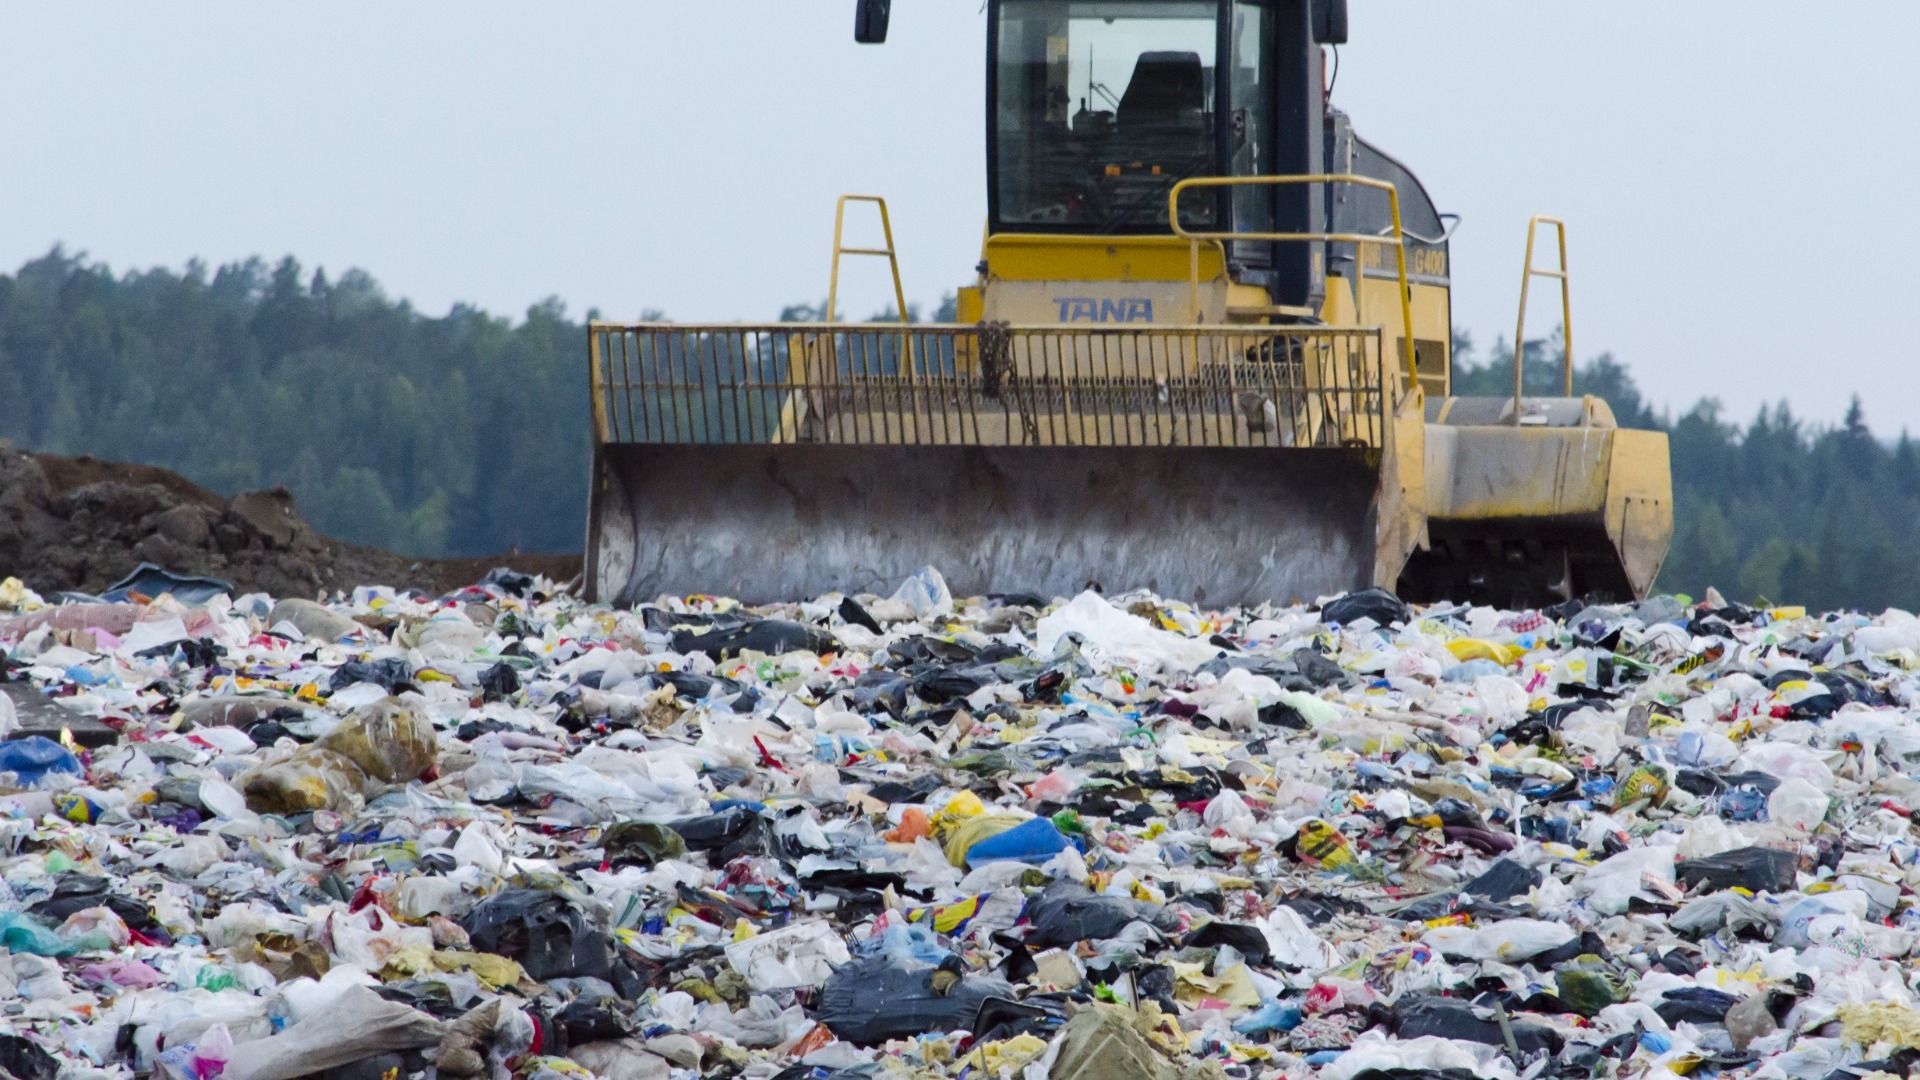 РЭО планирует бороться с проблемой переполненных мусорных полигонов Липецкой области